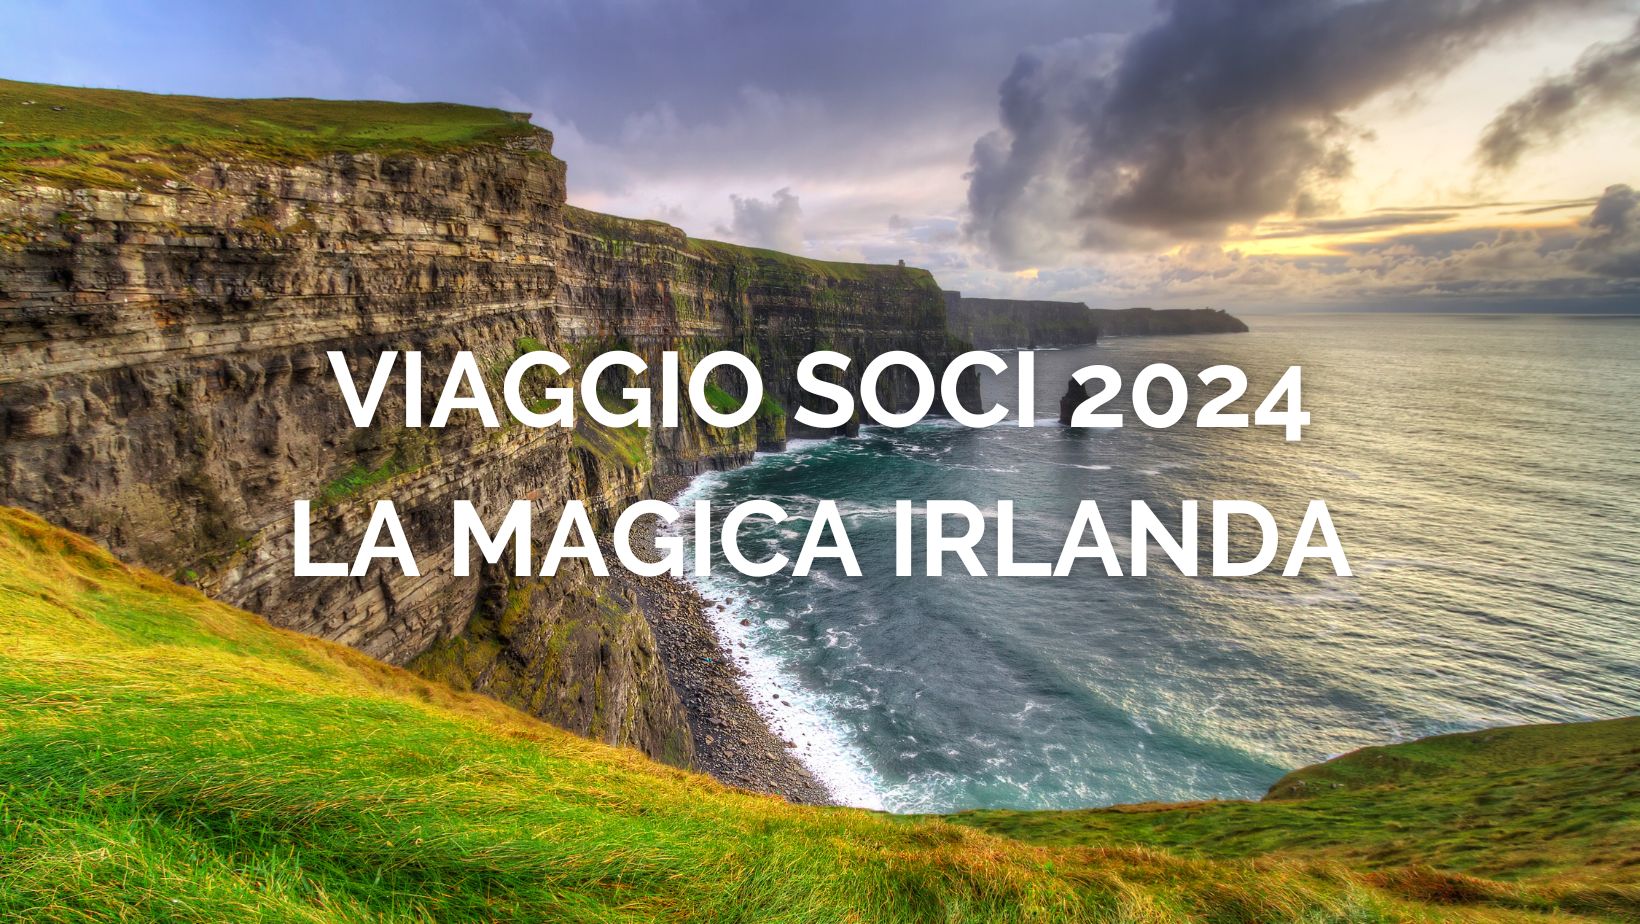 VIAGGIO SOCI 2024 "IL TOUR IRLANDA": SONO APERTE LE ISCRIZIONI 